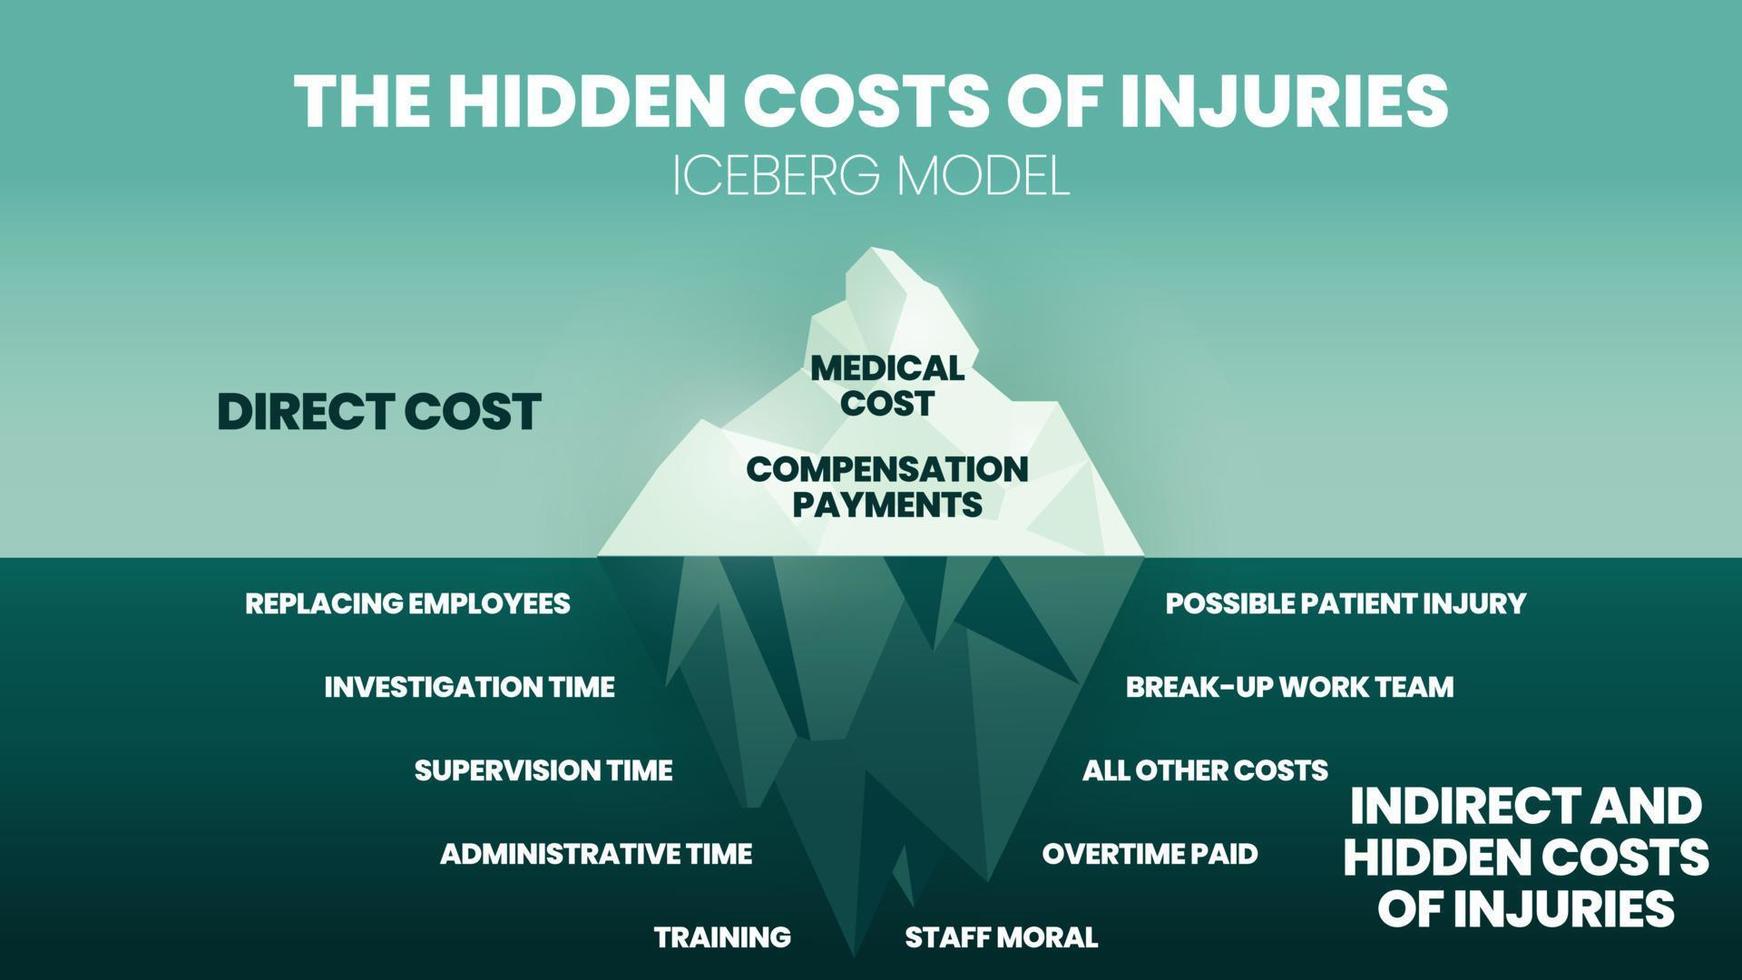 el vector del modelo iceberg y la ilustración en los costos ocultos de las lesiones tienen médicos y compensación en la superficie. el submarino tiene costos indirectos como tiempo, equipo, entrenamiento y moral.